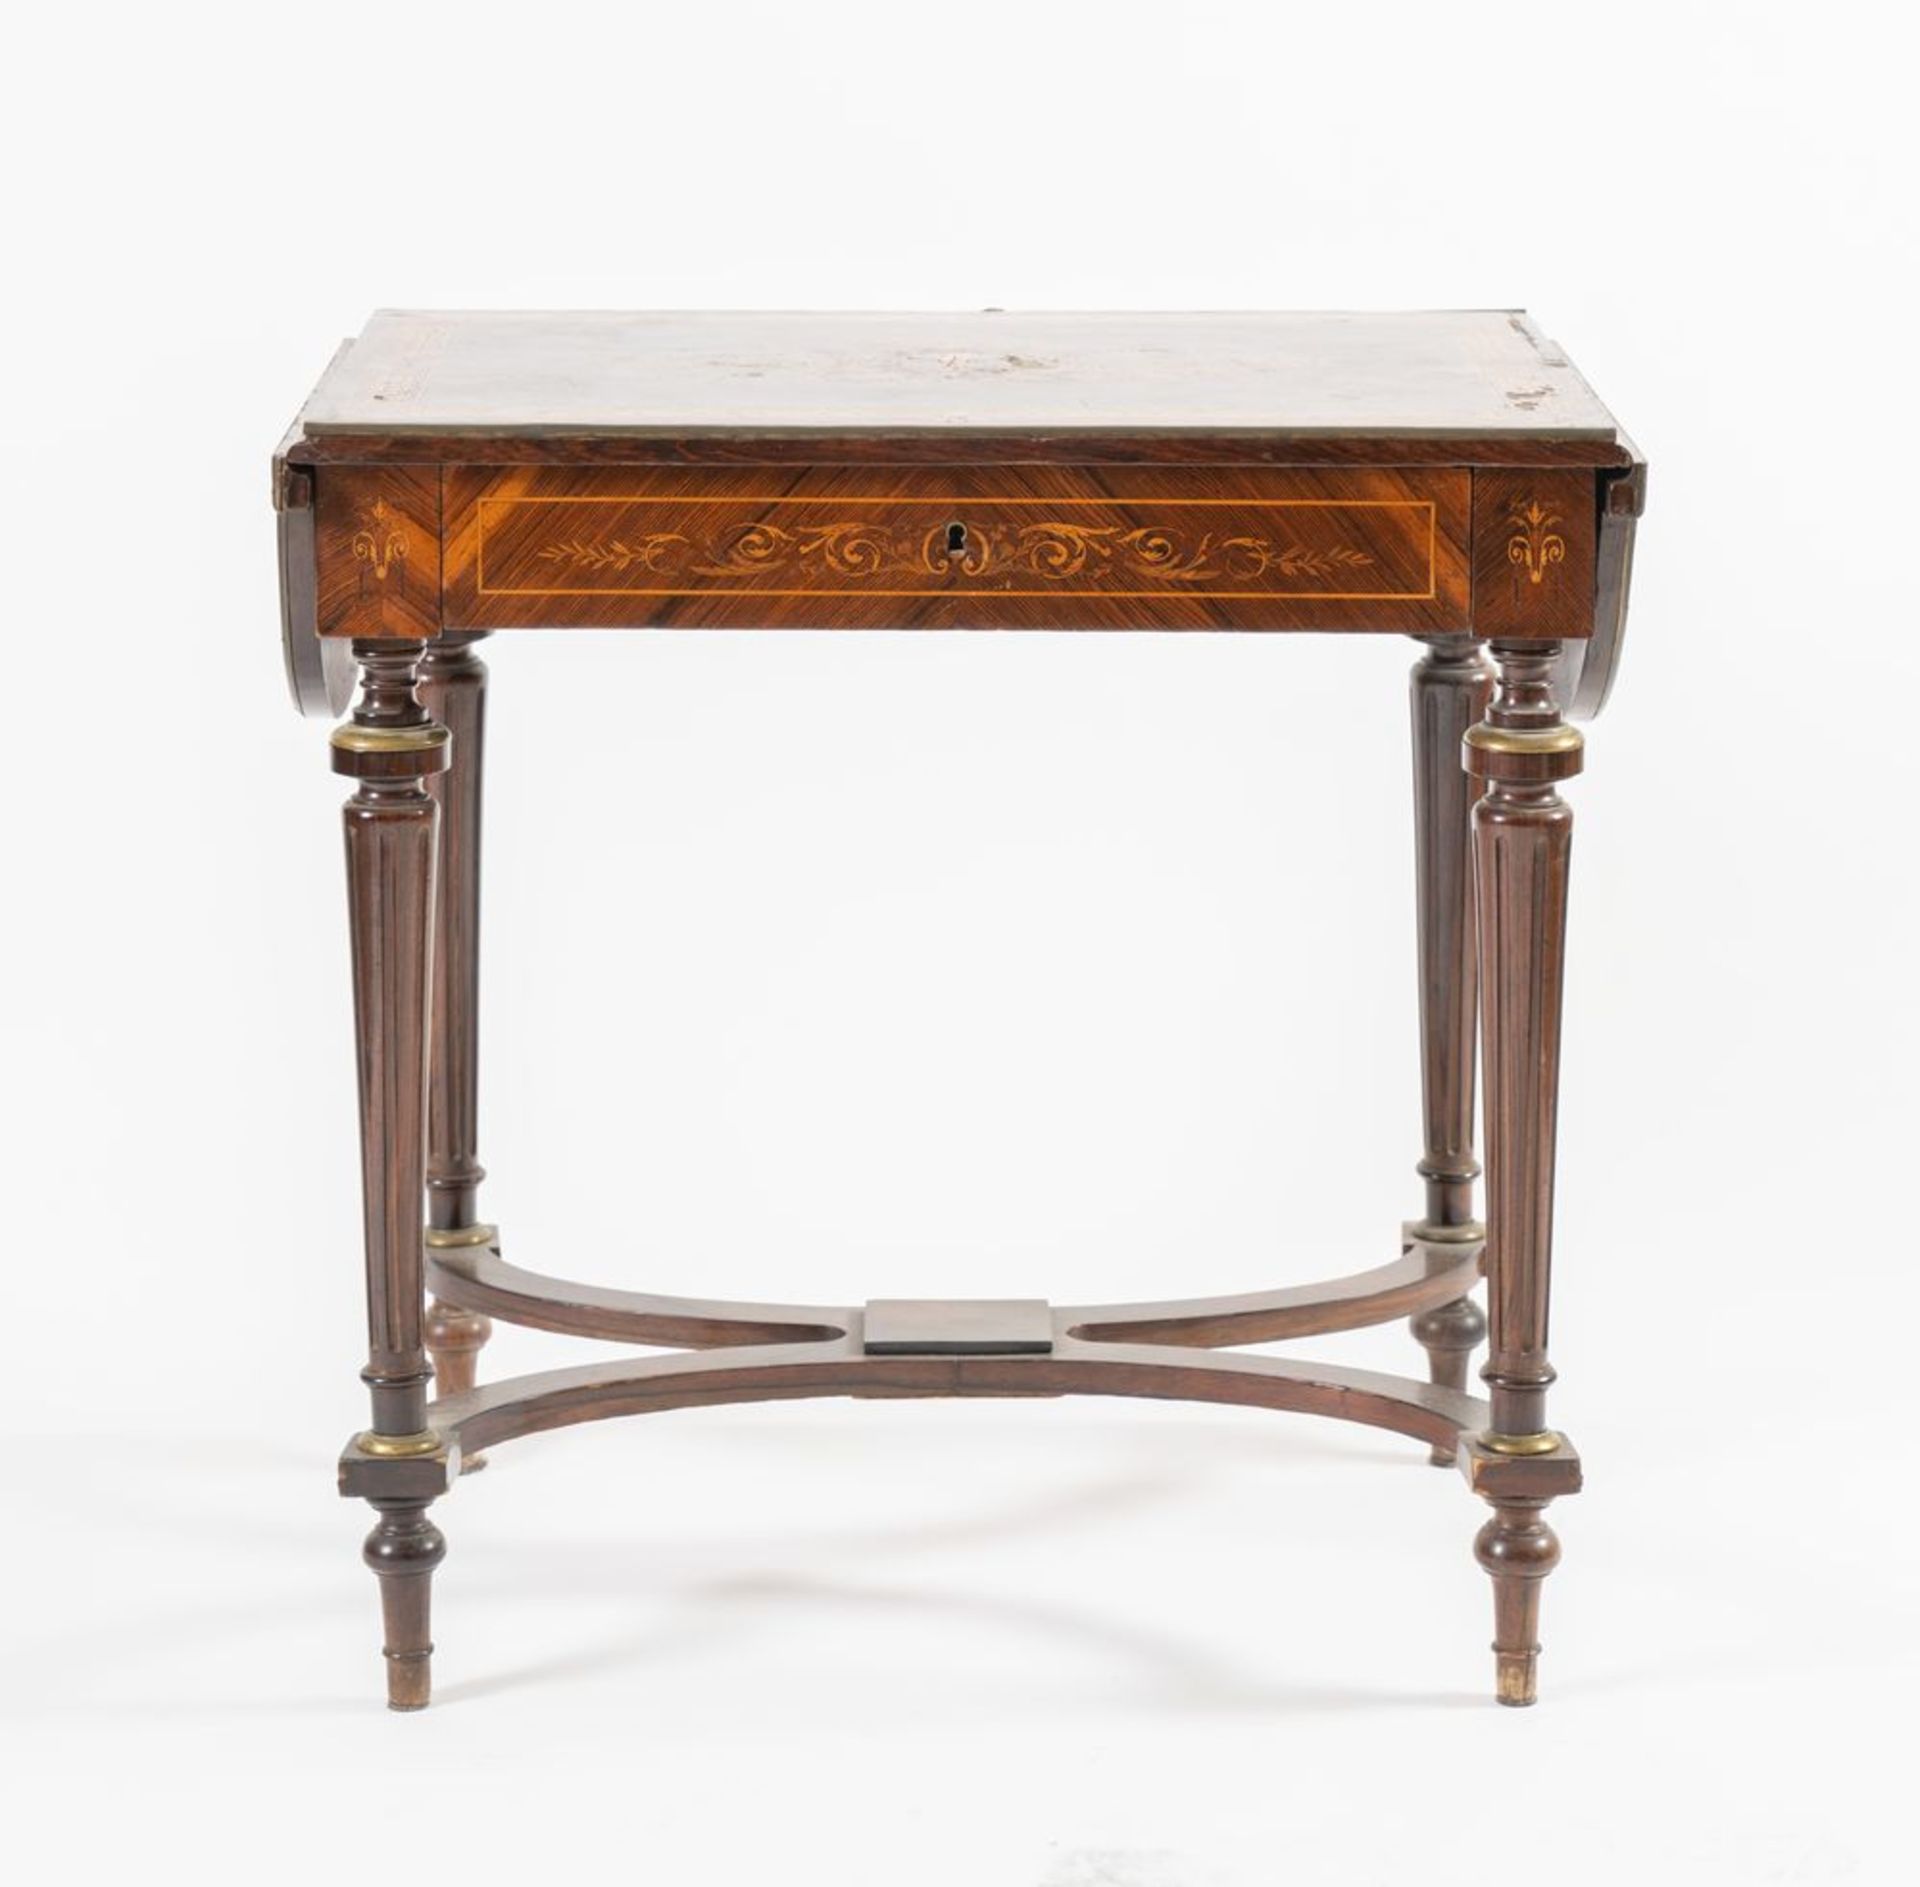 Tavolino con bandelle, lastronato in legno di palissandro. Francia, fine del XIX secolo. Riccamente